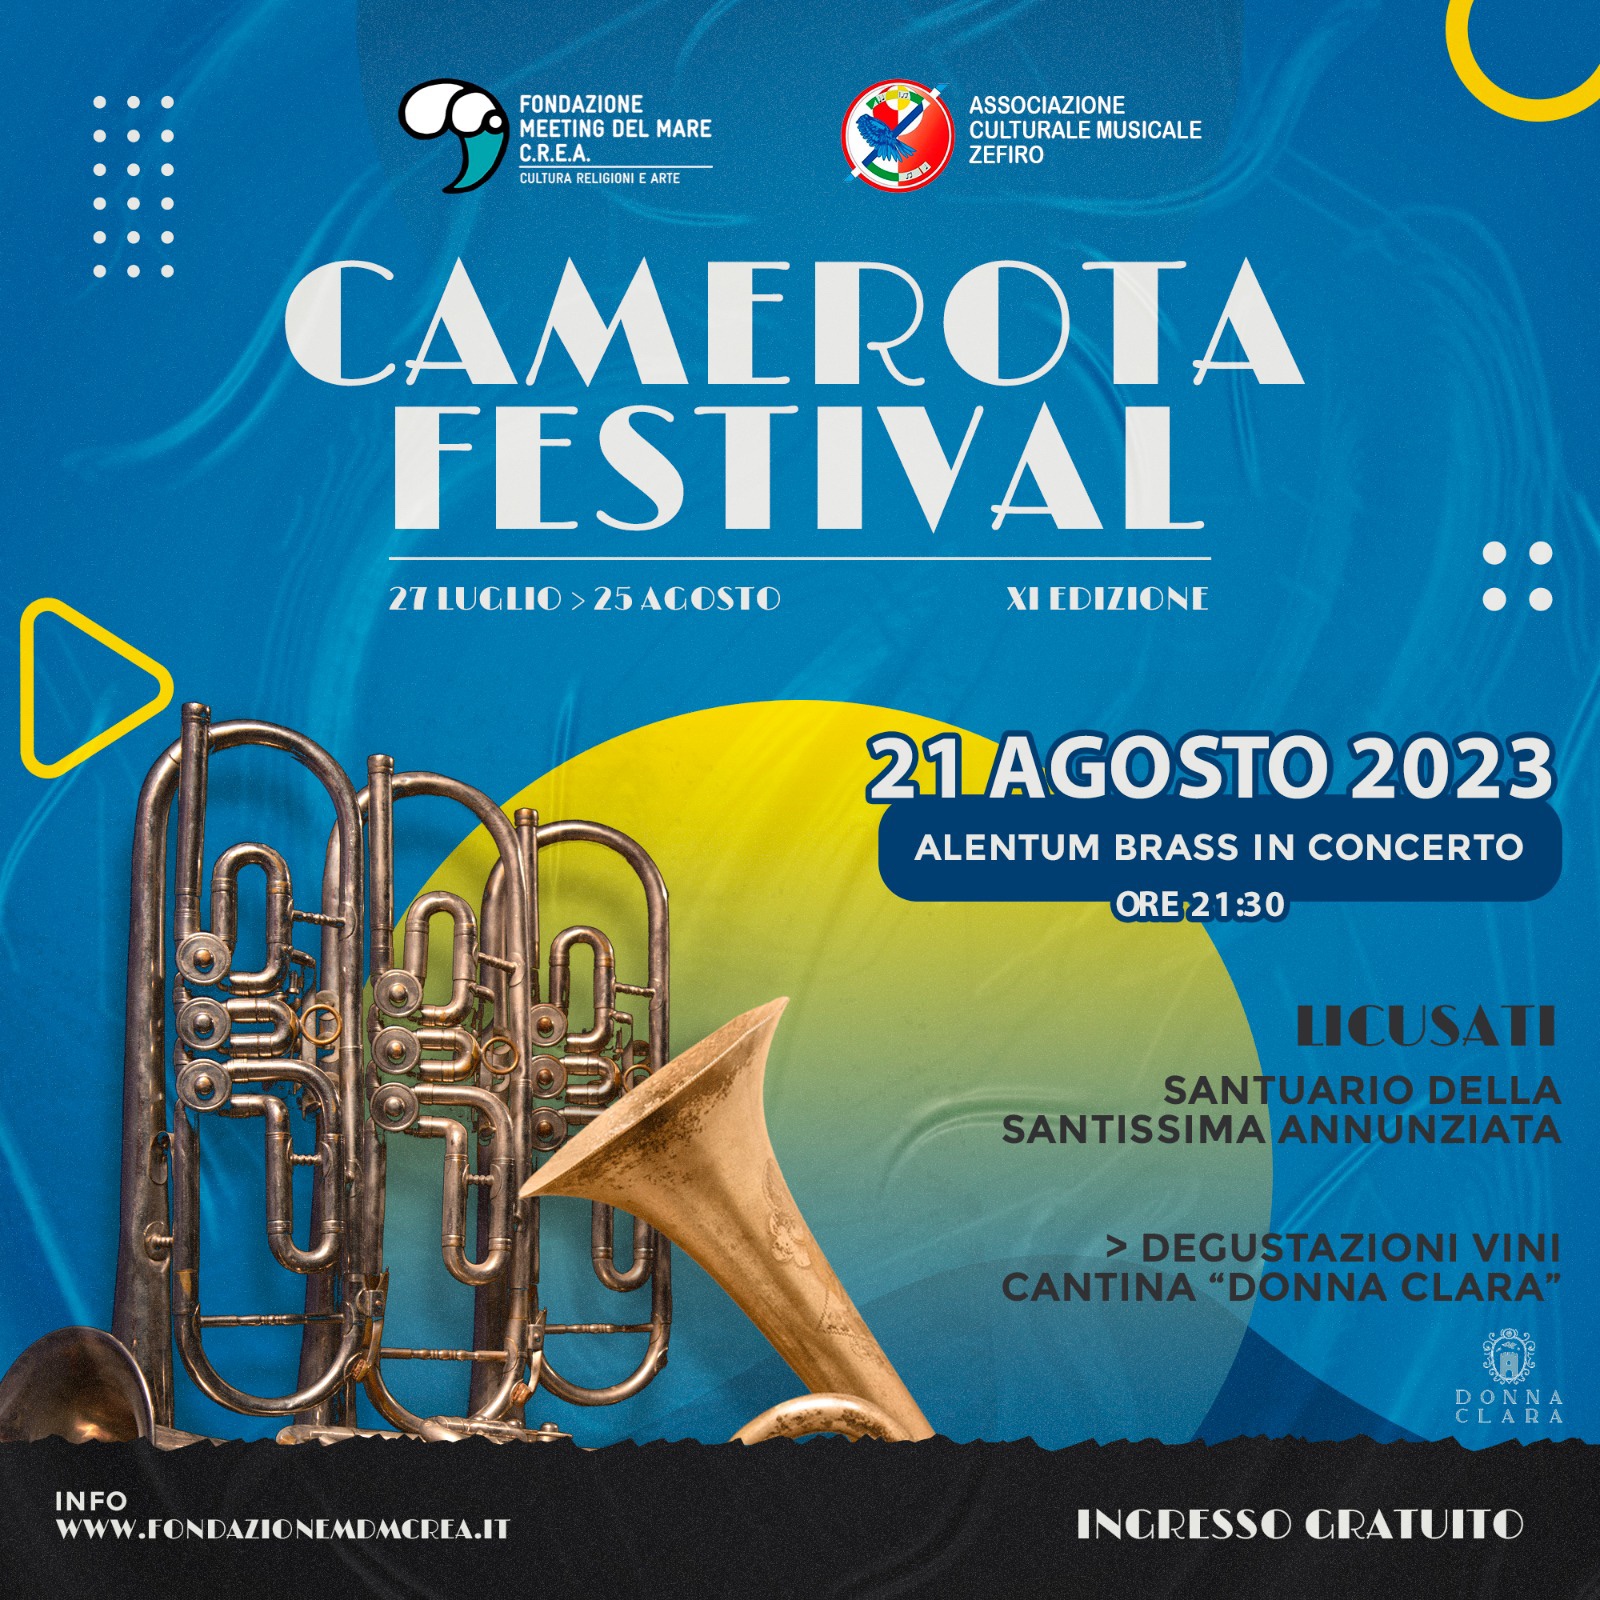 Camerota Festival: tutto pronto per le ultime tre date